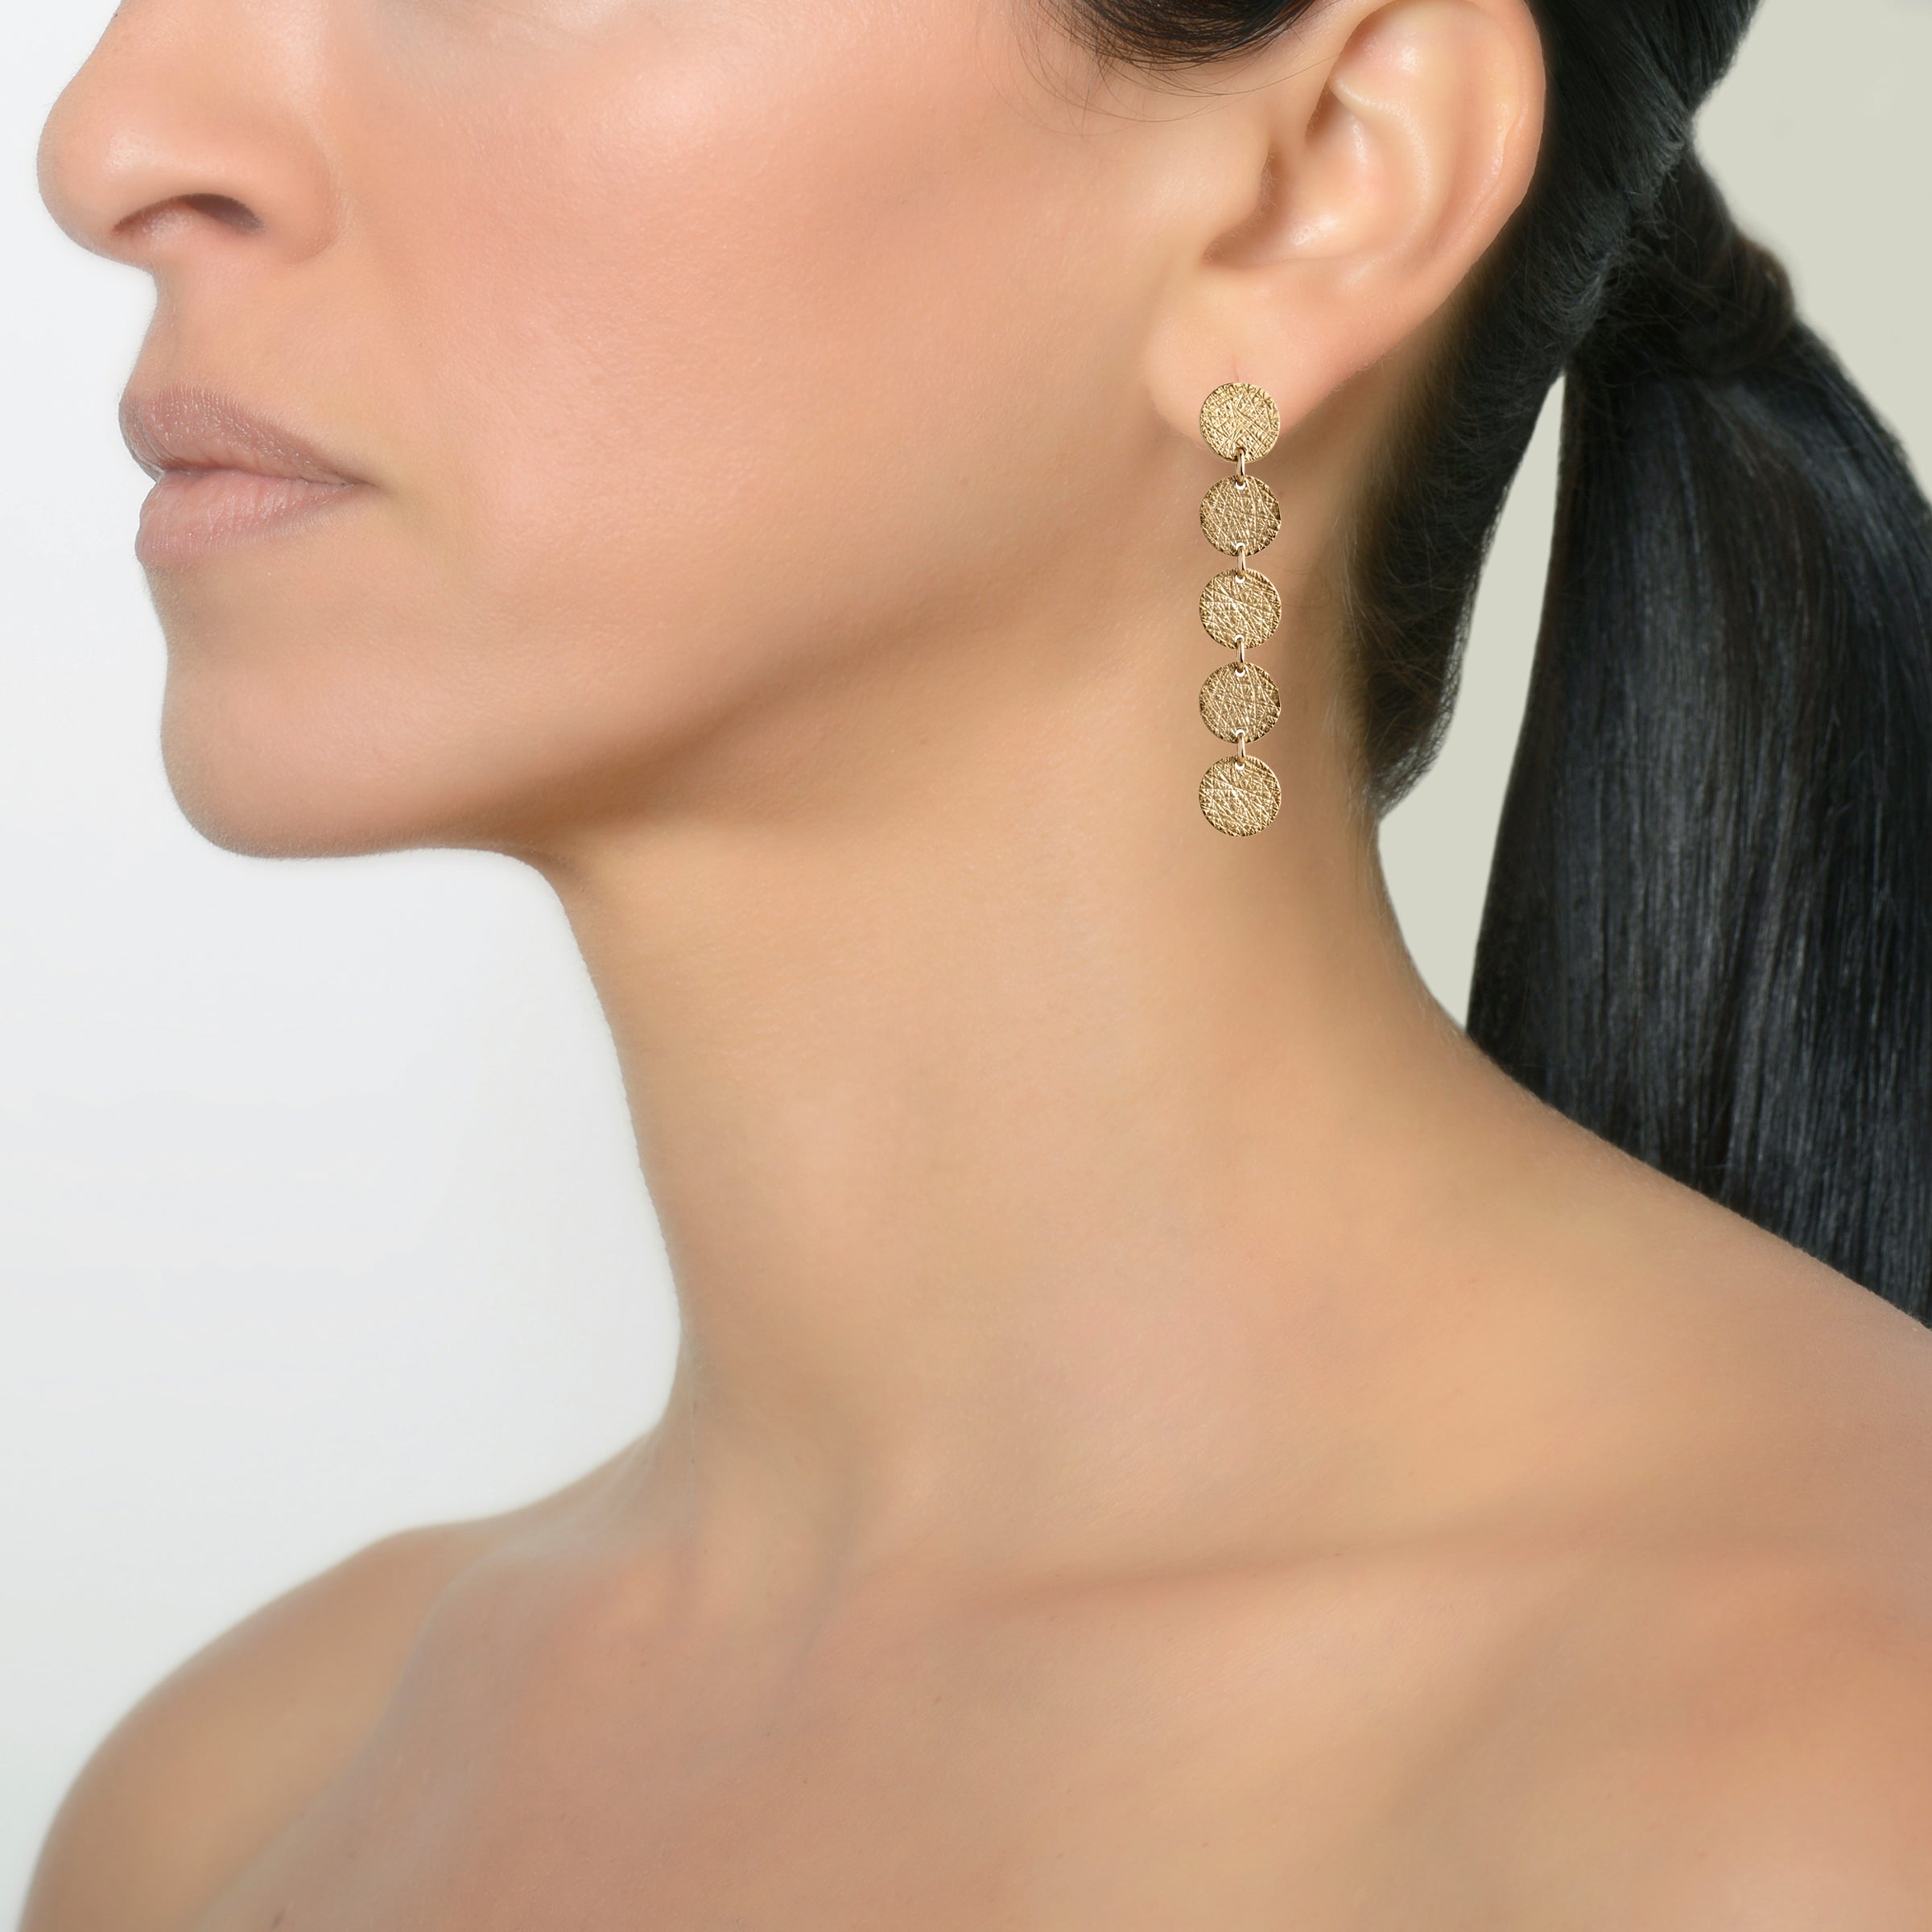 5-DOT EARRINGS - Bridget King Jewelry